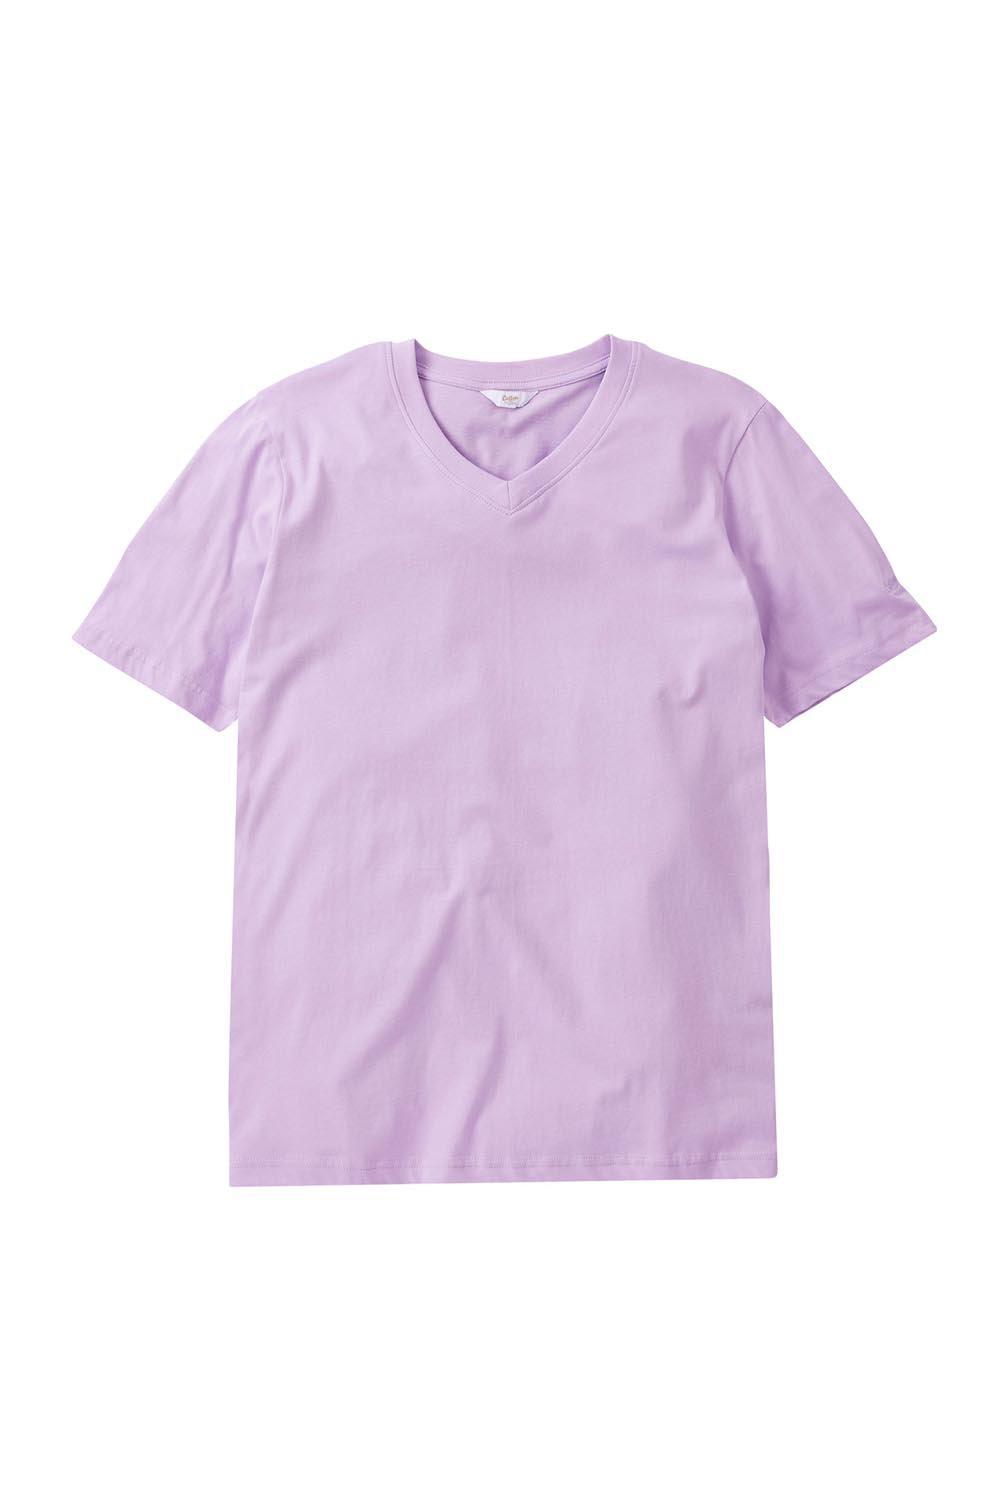 футболка с V-образным вырезом Cotton Traders, фиолетовый